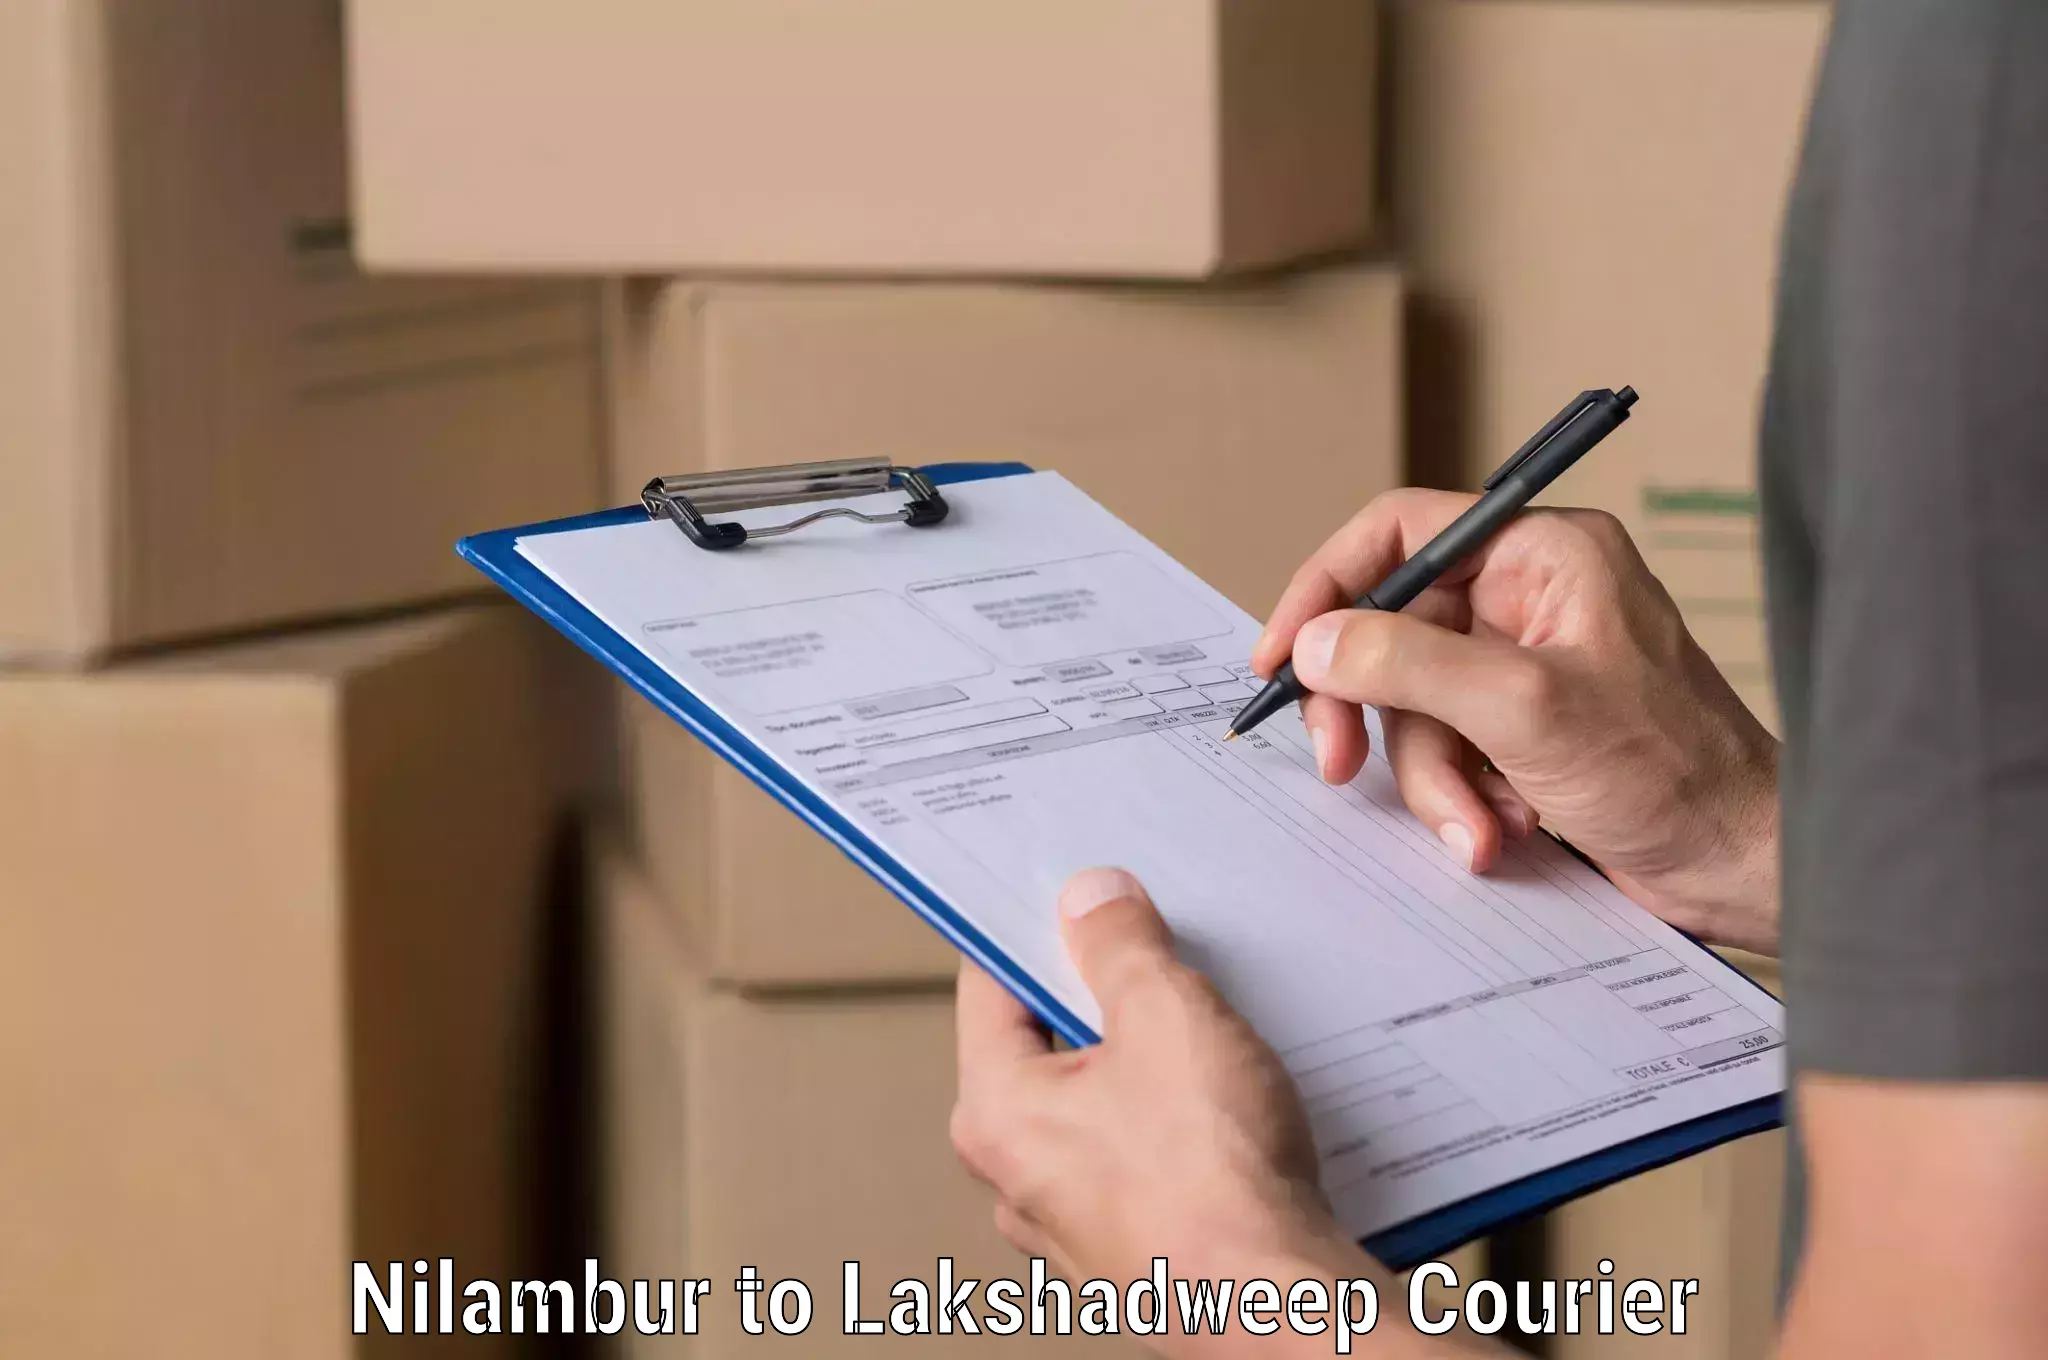 Advanced shipping network in Nilambur to Lakshadweep